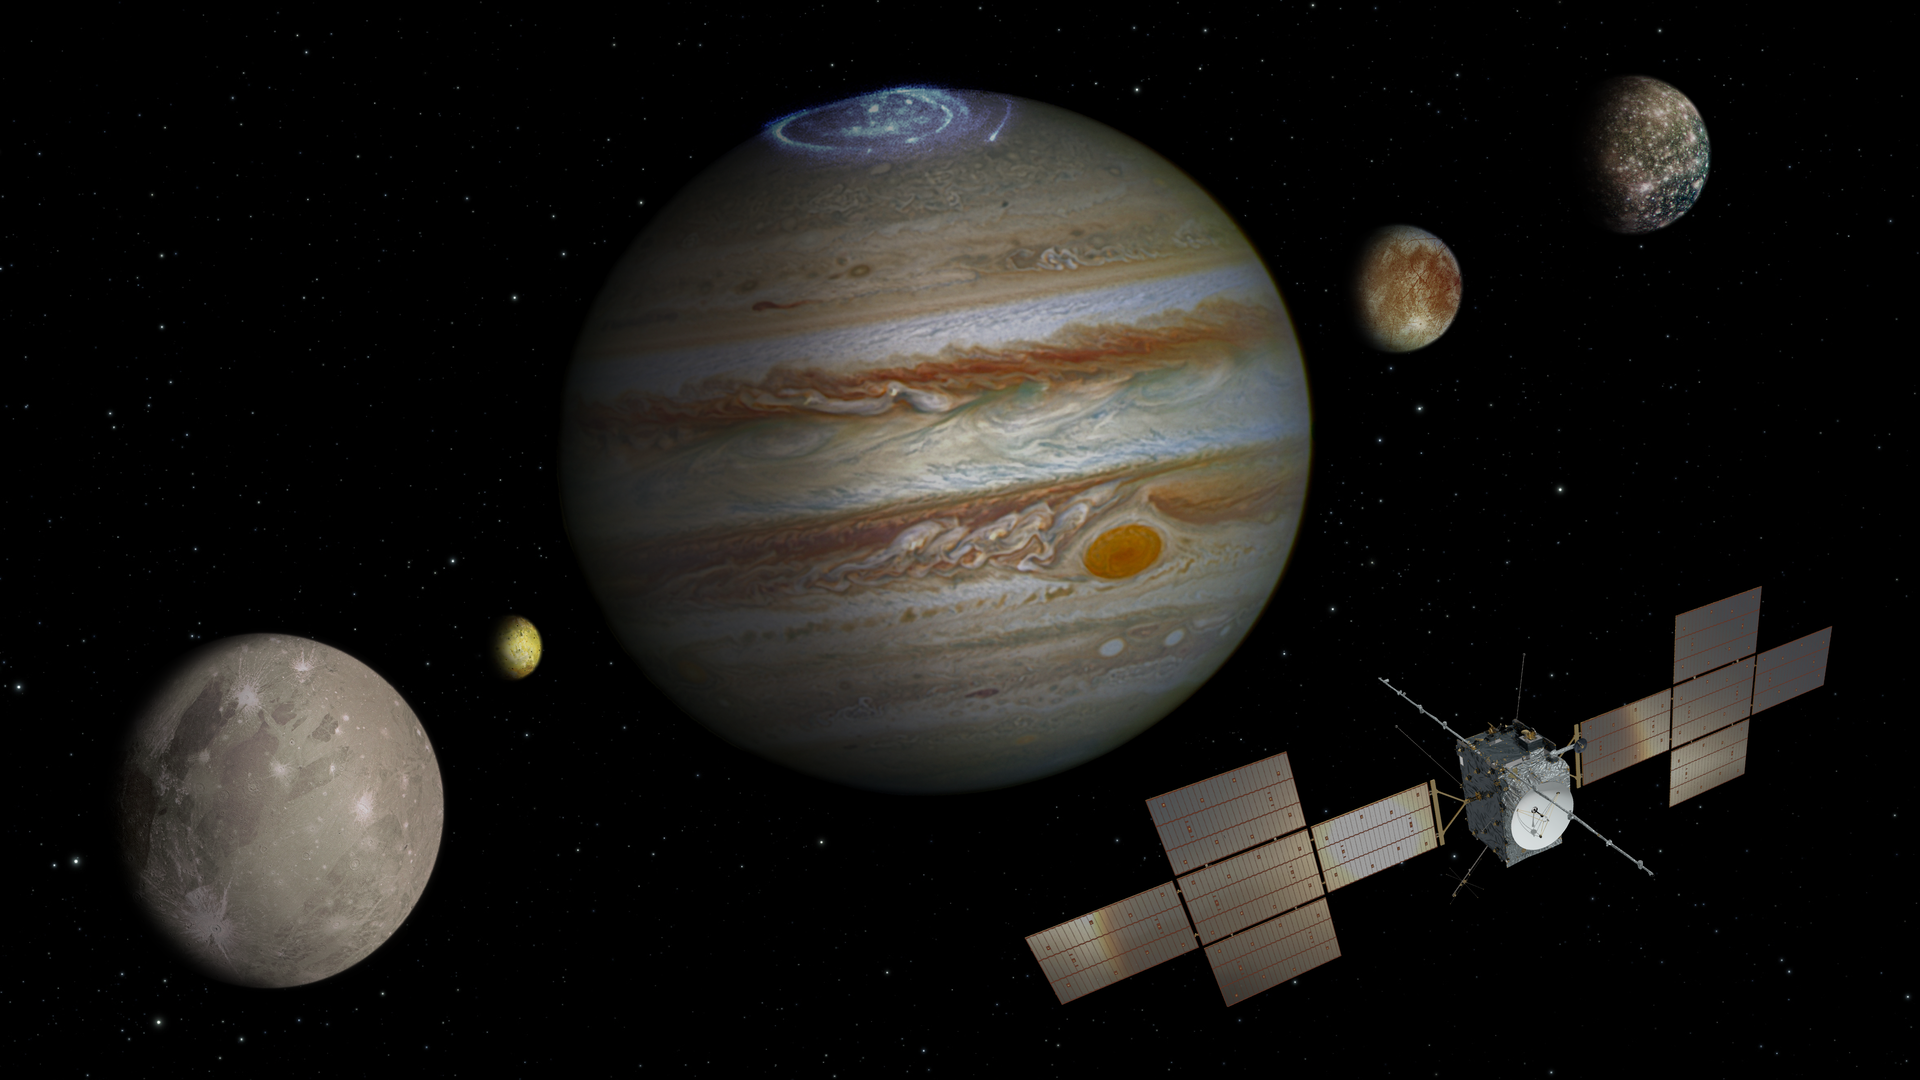 ESA startet interplanetare Raumstation JUICE zur Suche nach Leben auf Jupitersatelliten